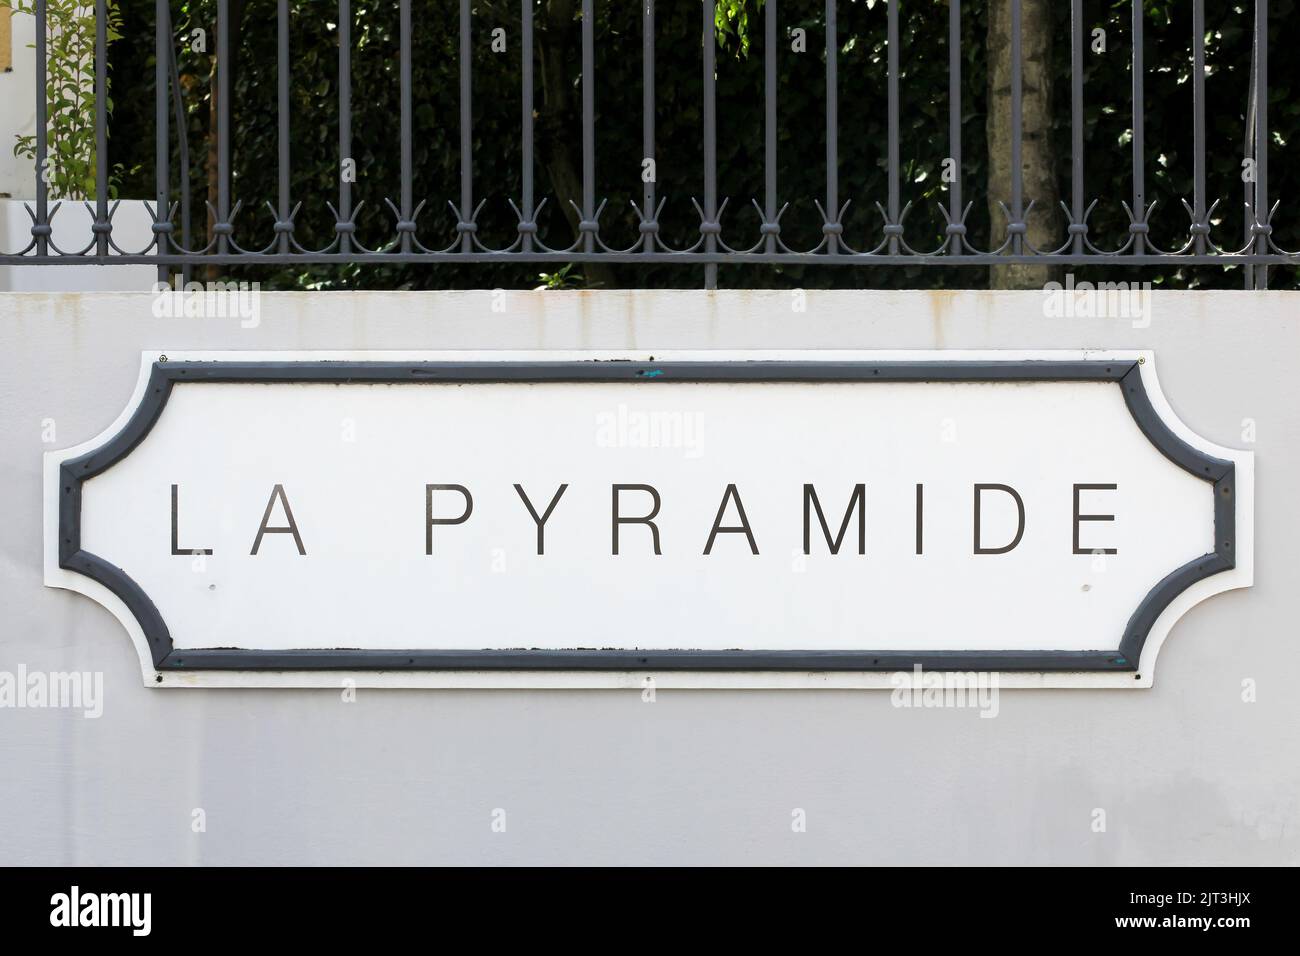 Vienne, Francia - 7 de junio de 2020: Cartel de La Pyramide en un muro. El restaurante La Pyramide es un restaurante de 2 estrellas con guía Michelin situado en Vienne, Francia Foto de stock